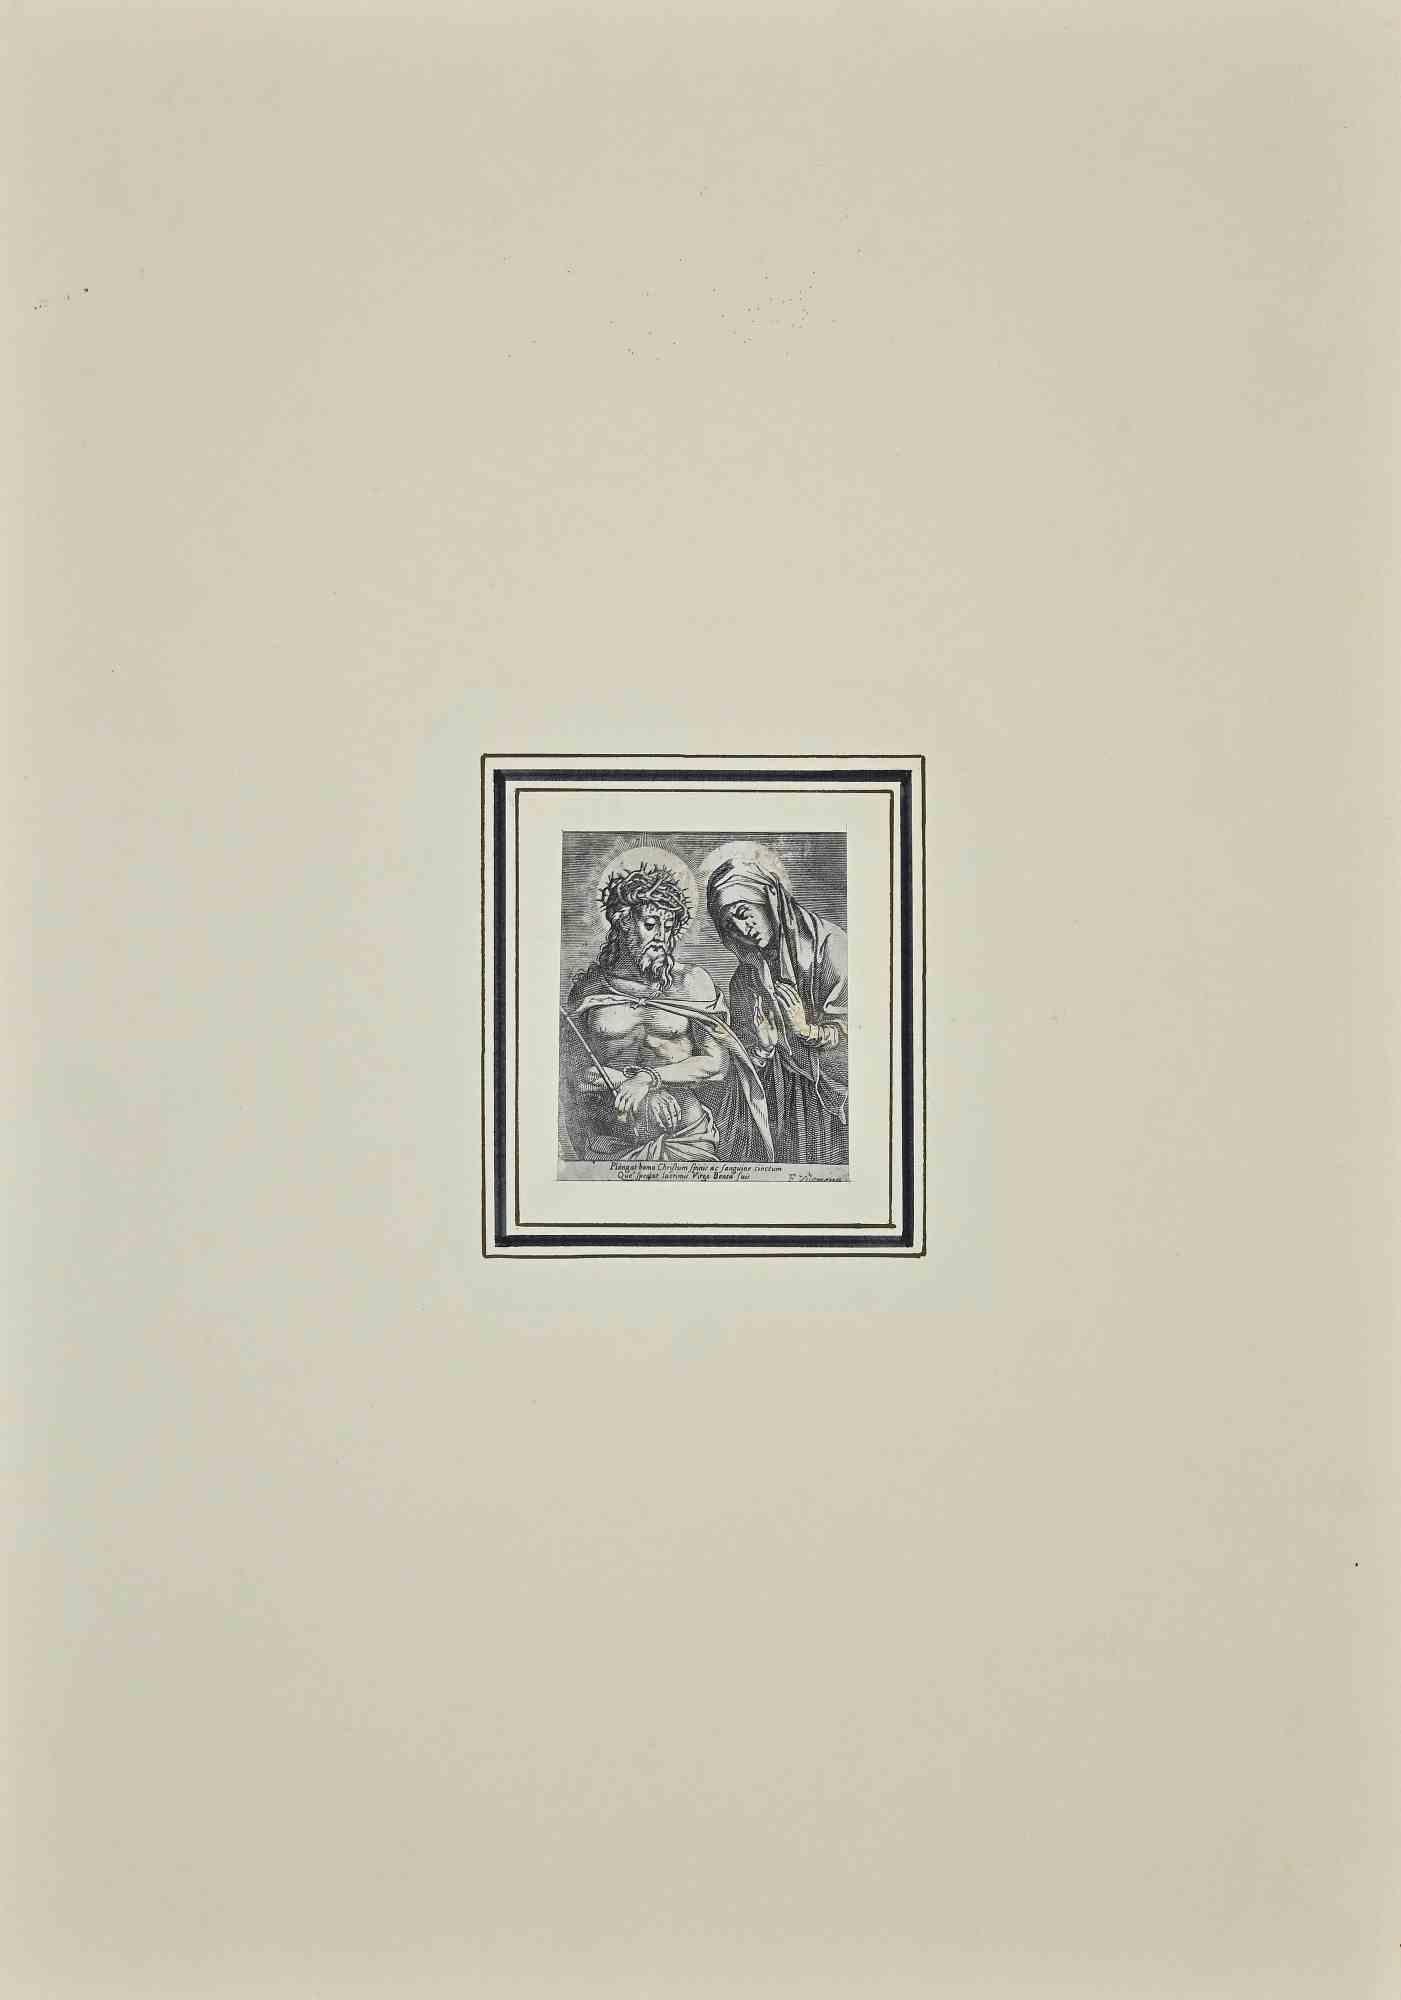 Jésus et la Vierge Marie - Gravure - Seconde moitié du 18ème siècle - Print de Unknown